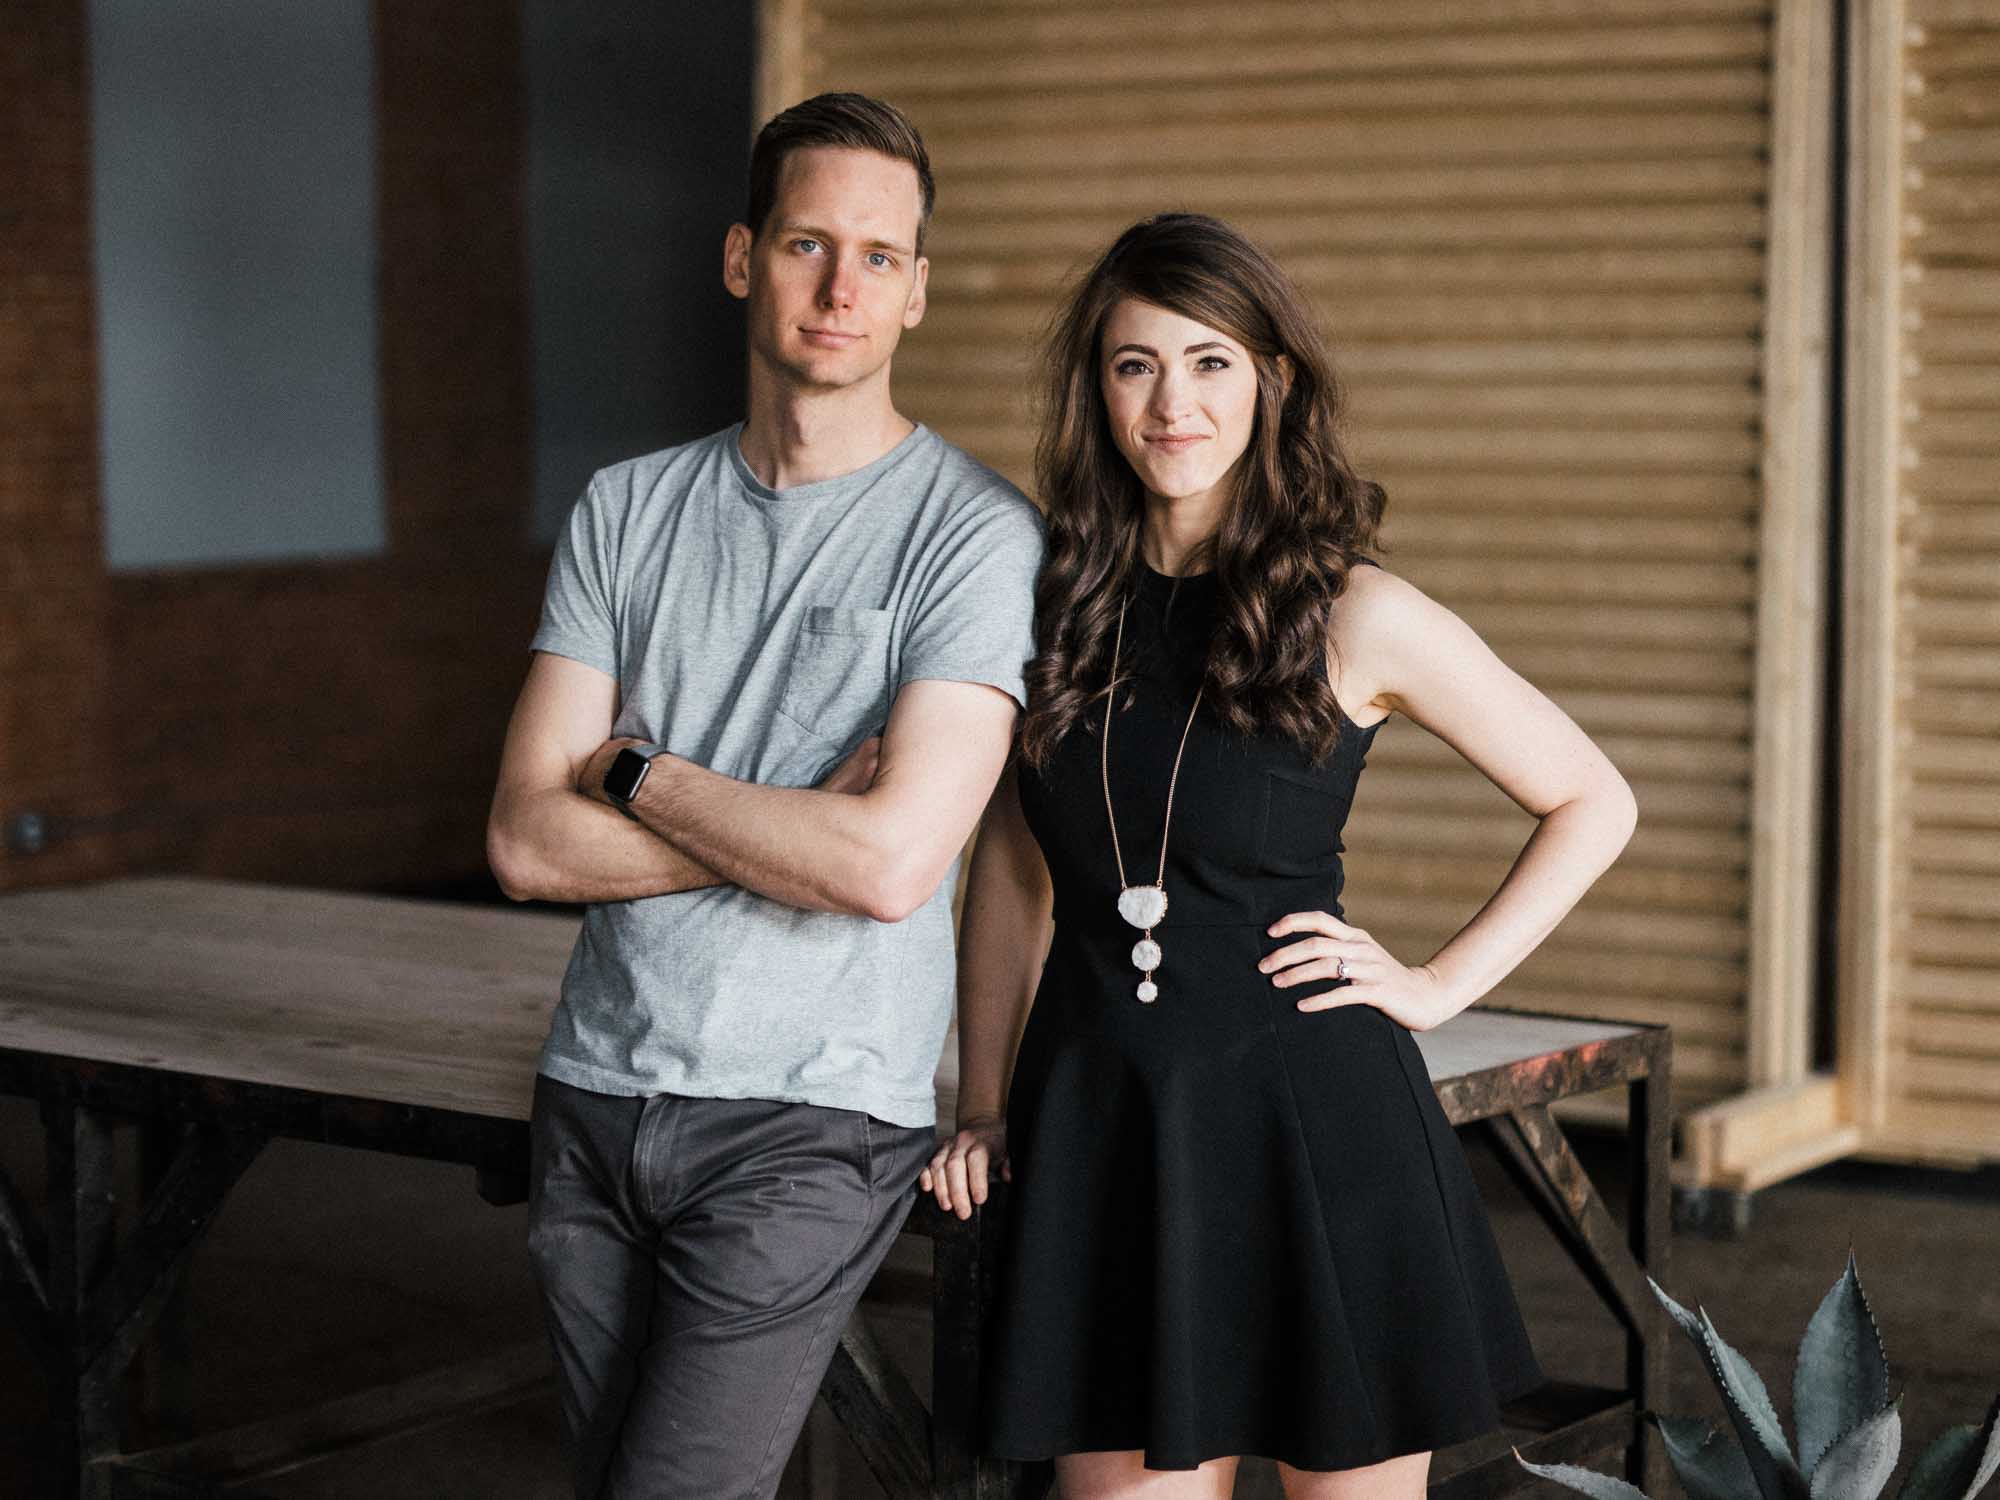 Supply Co-founders Patrick & Jennifer